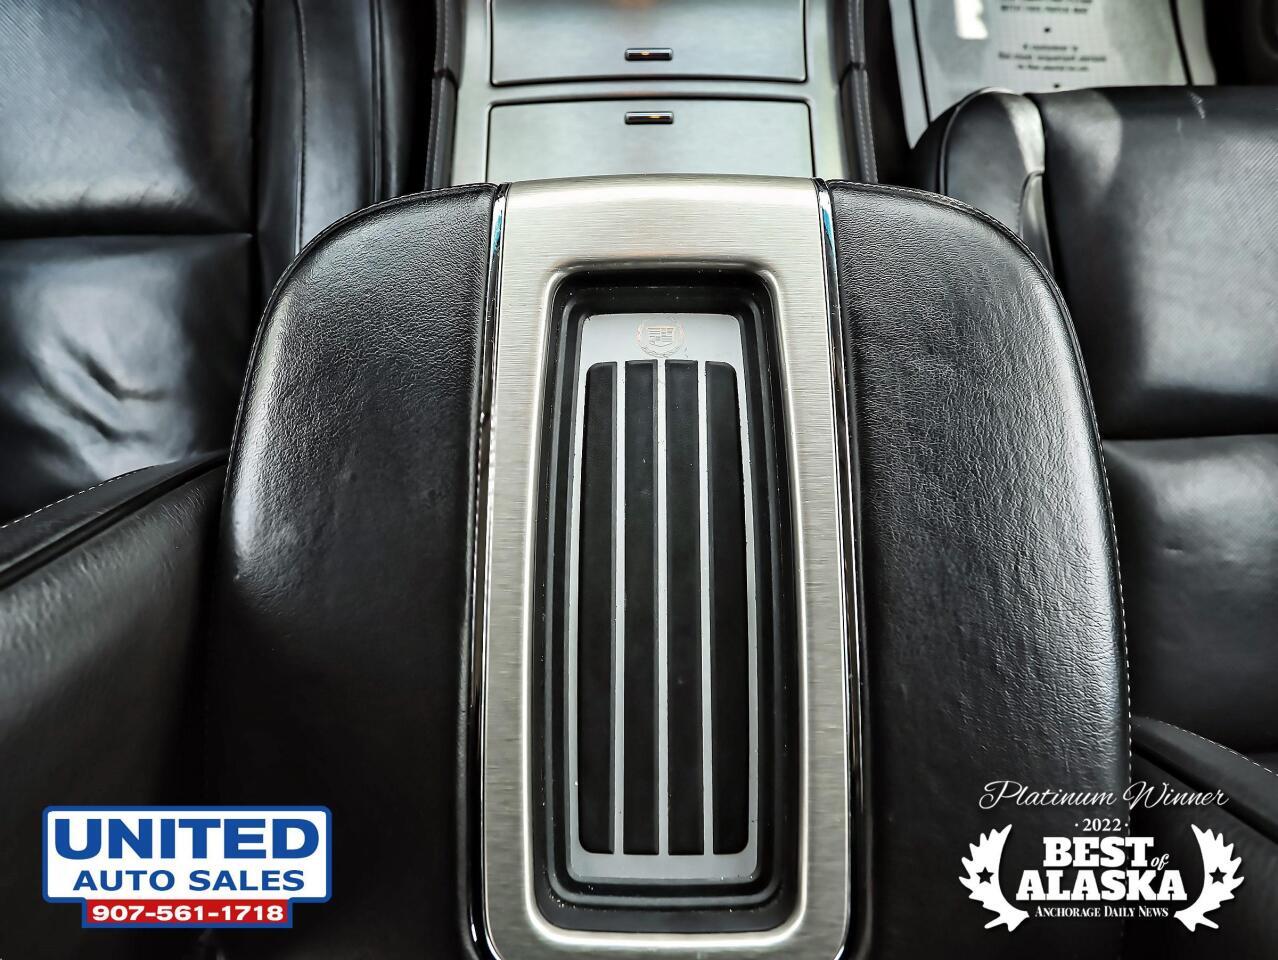 2013 Cadillac Escalade ESV Platinum Edition AWD 4dr SUV 77